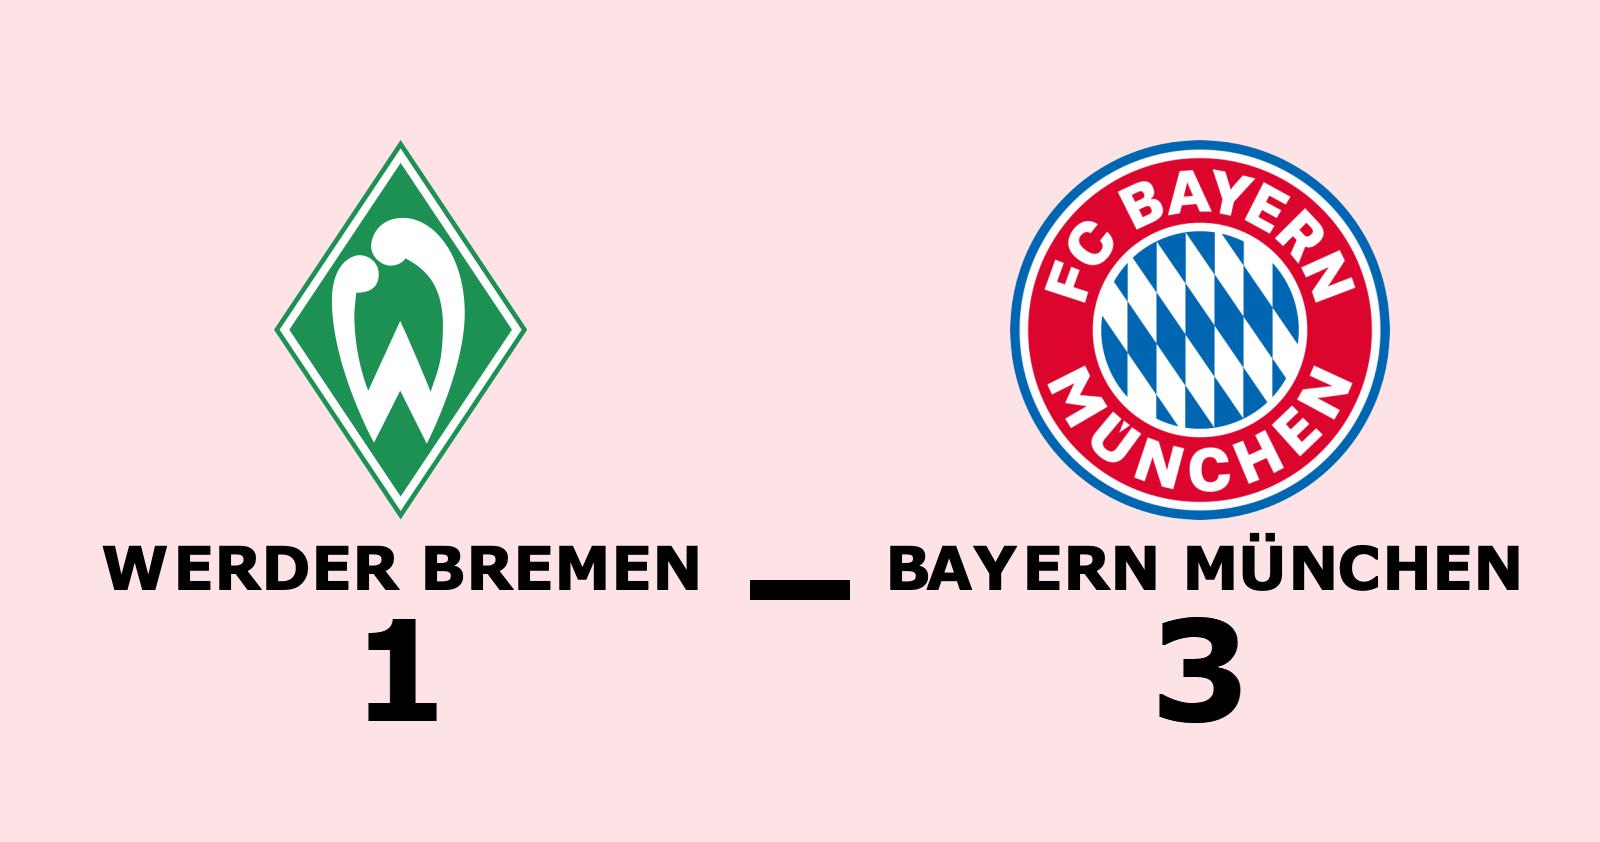 Bayern München utökar serieledningen efter ny seger